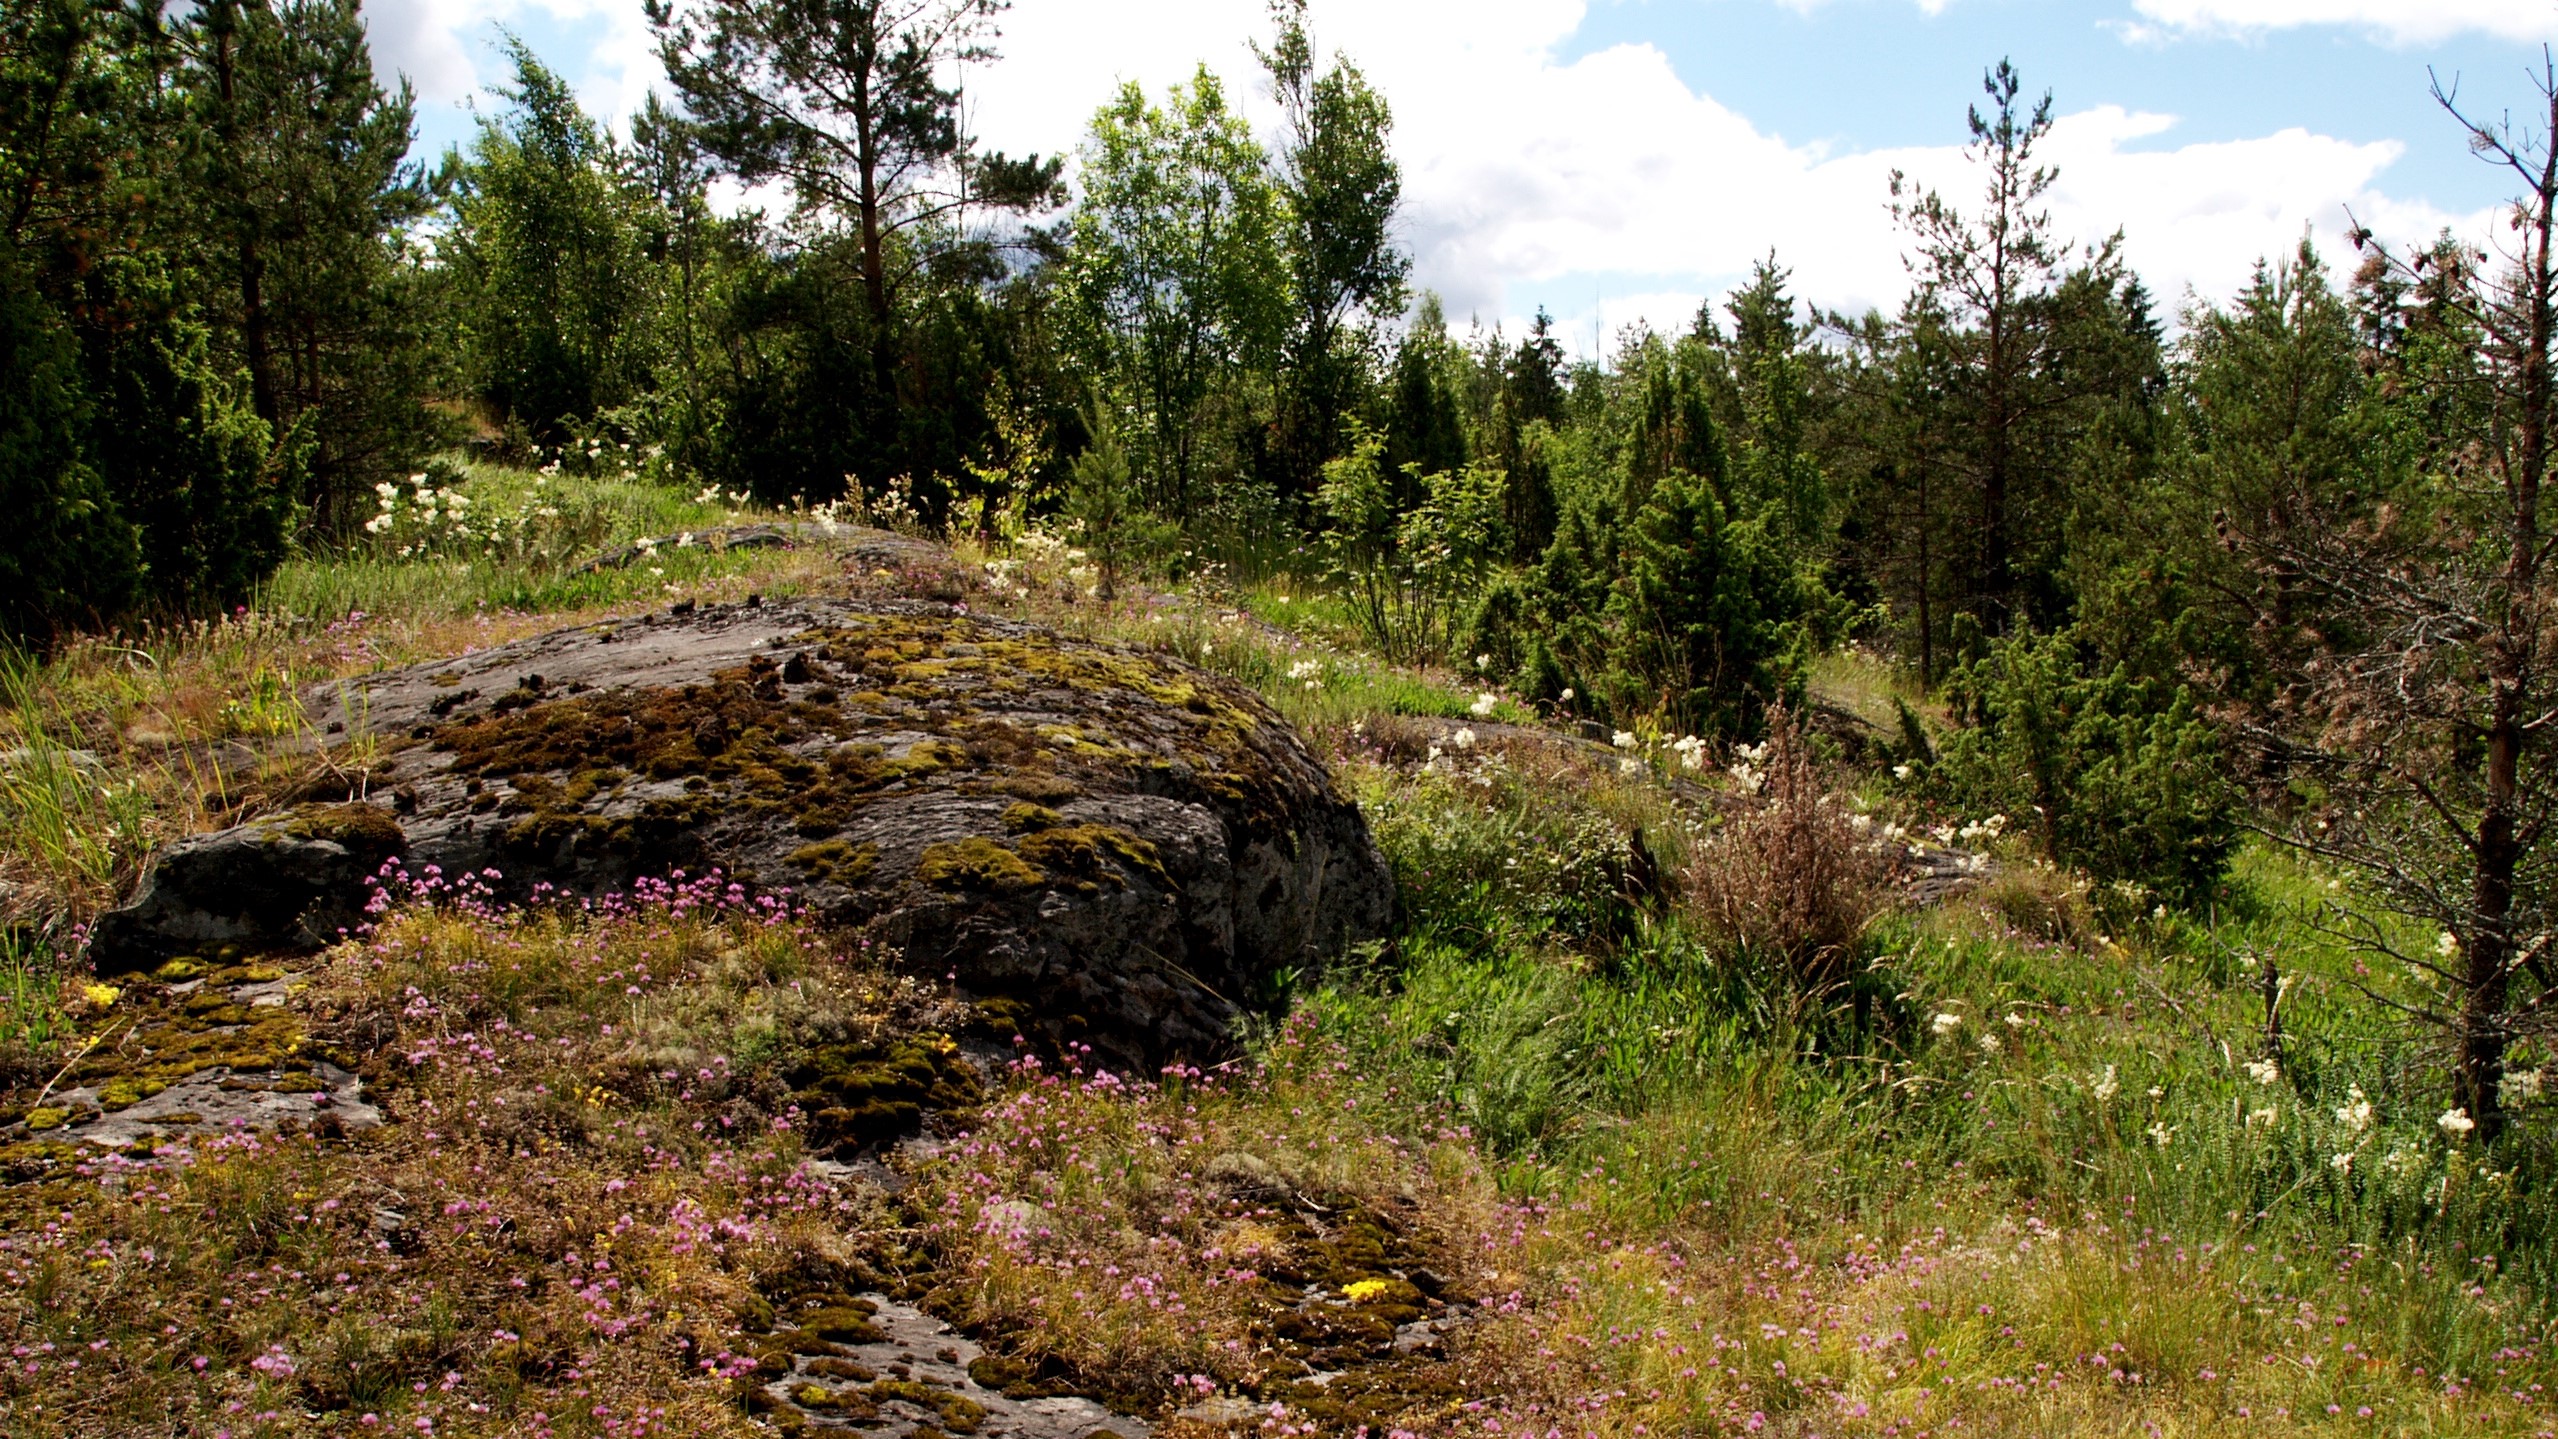 Kalliopalajastuman ympärillä kukkivaa ketokasvillisuutta. Taustalla näkyy metsää.